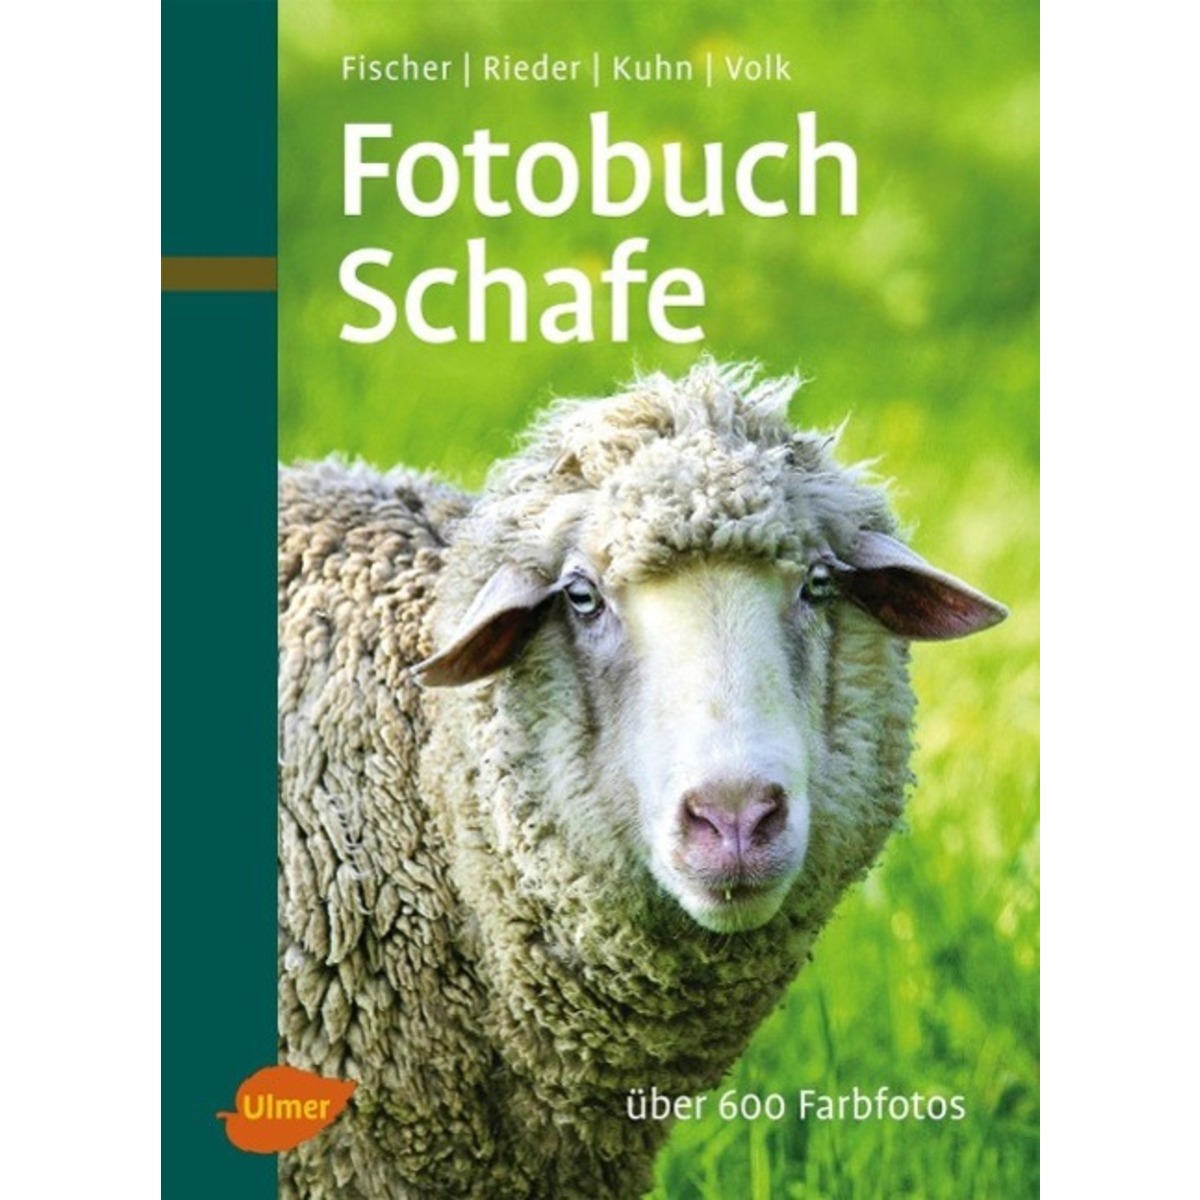 Fotobuch Schafe von Ulmer Eugen Verlag